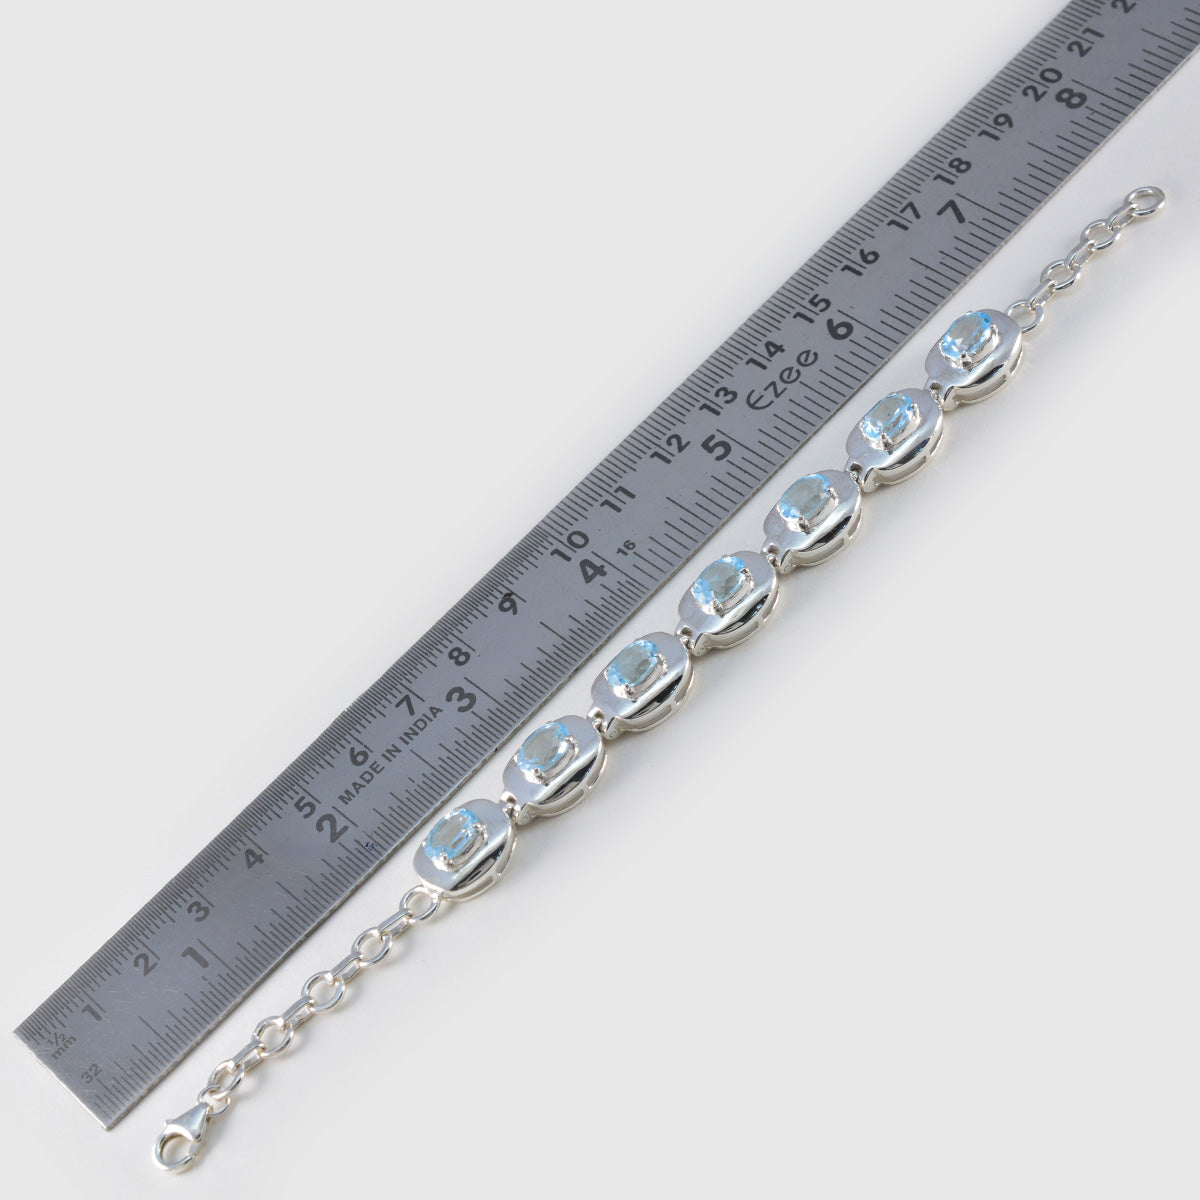 Riyo Supplies 925 Sterling Silber Armband für Damen, blaues Topas-Armband, Krappenfassung, Armband mit Fischhaken-Gliederarmband, Größe L, 15,2–21,6 cm.